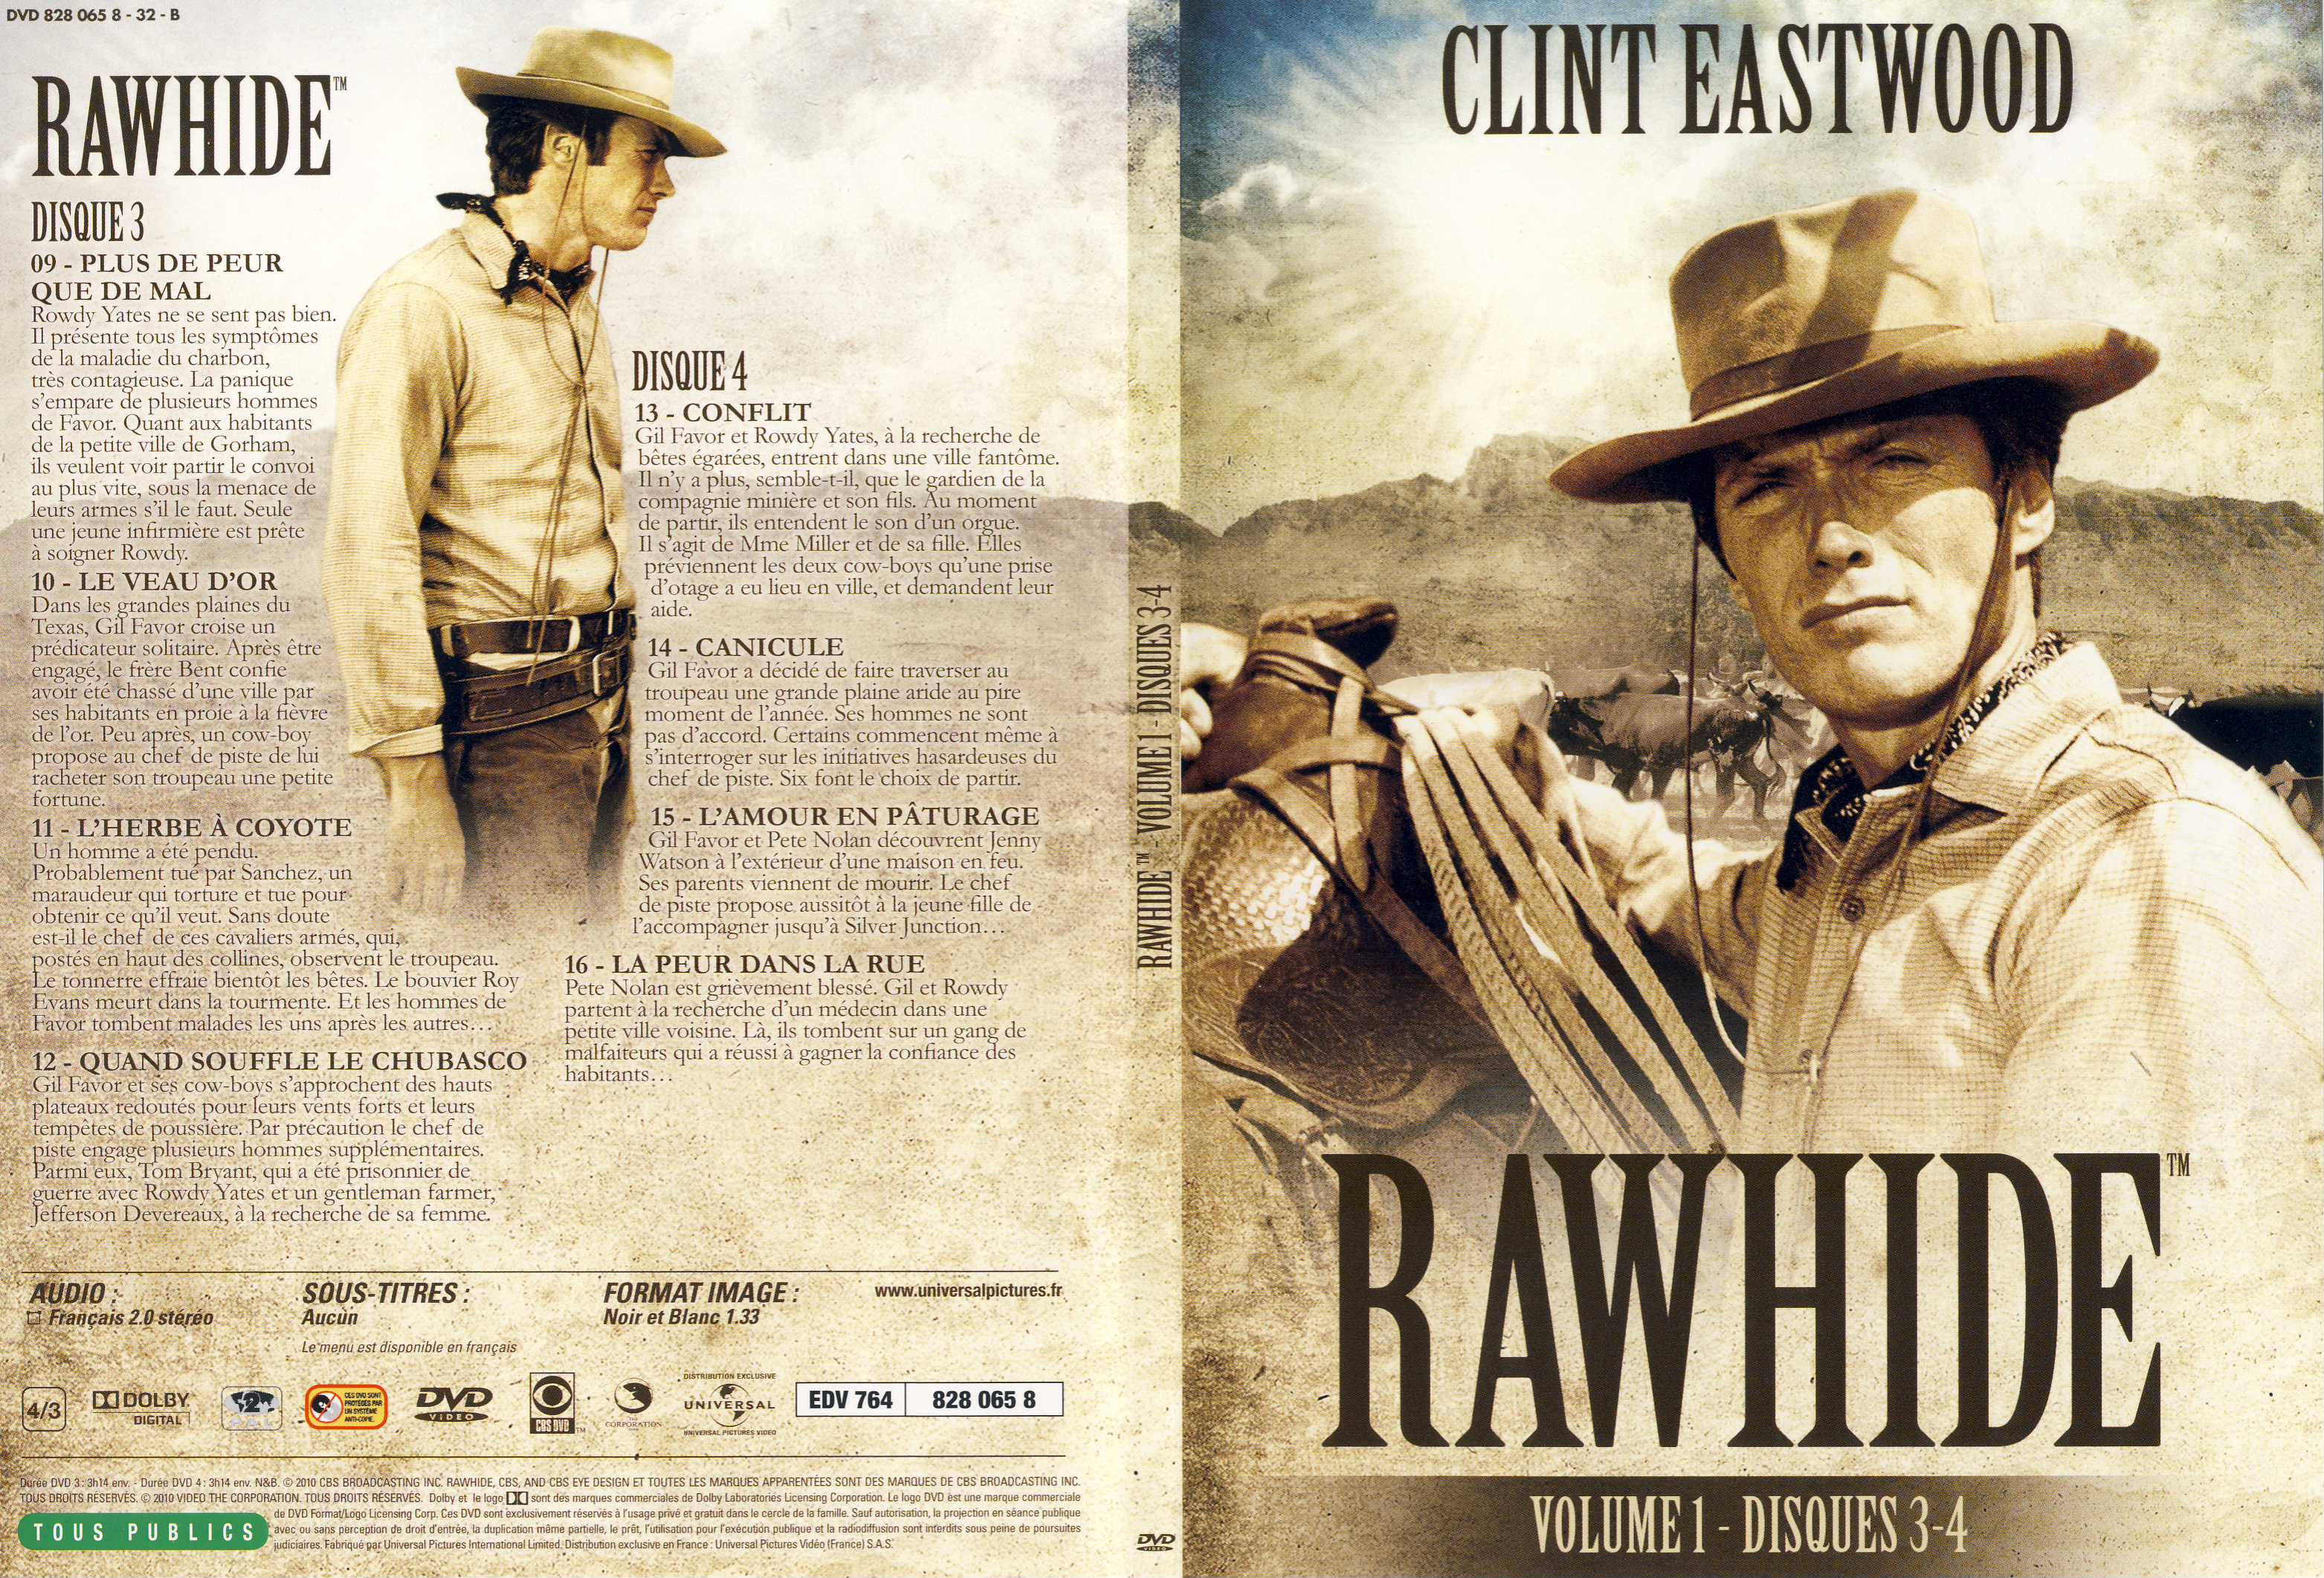 Jaquette DVD Rawhide vol 01 DVD 2 - SLIM